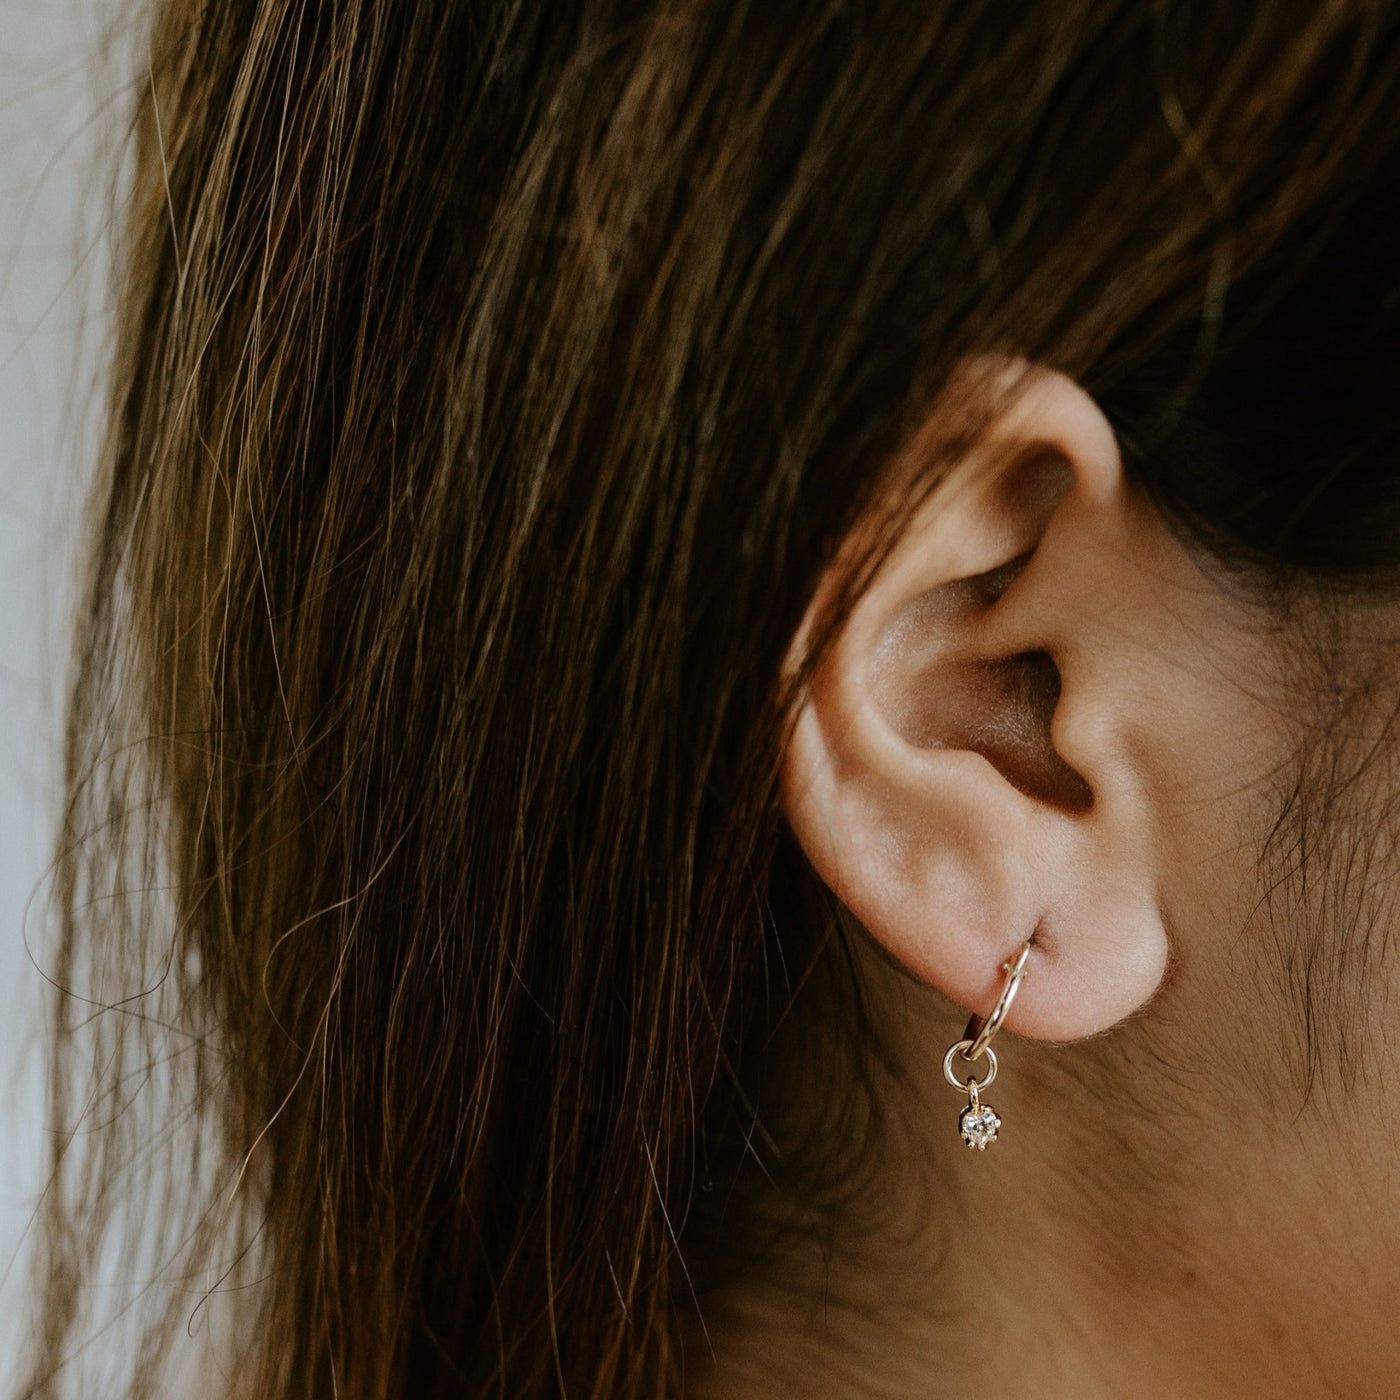 Auckland Earrings - Jillian Leigh Jewellery - earrings